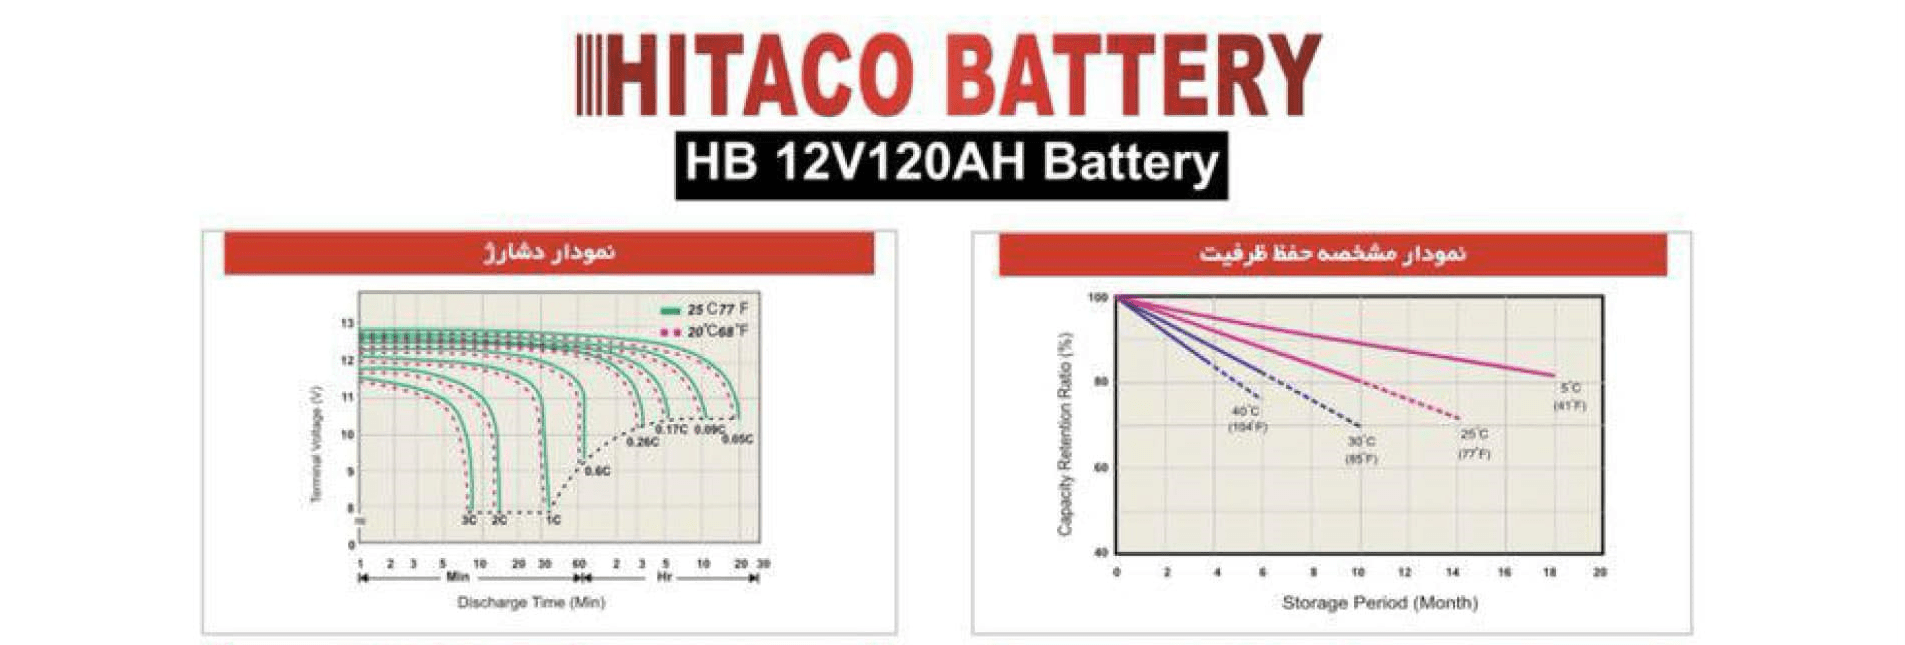 کاتالوگ باتری یو پی اس هیتاکو 120 آمپر - 1